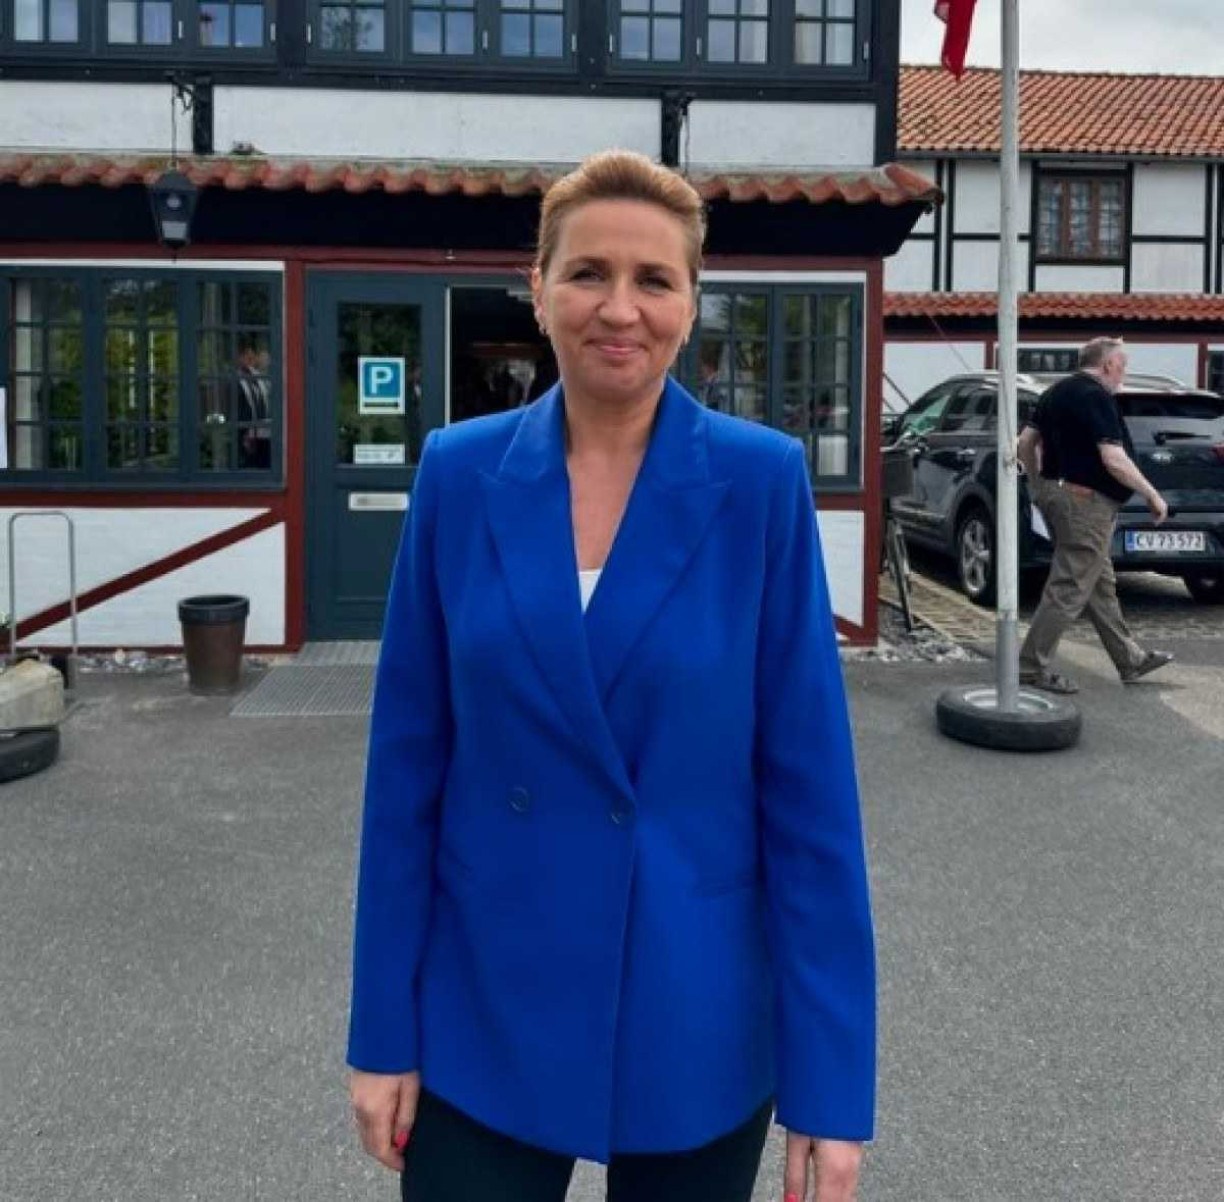 Primeira-ministra dinamarquesa cancela compromissos após sofrer agressão